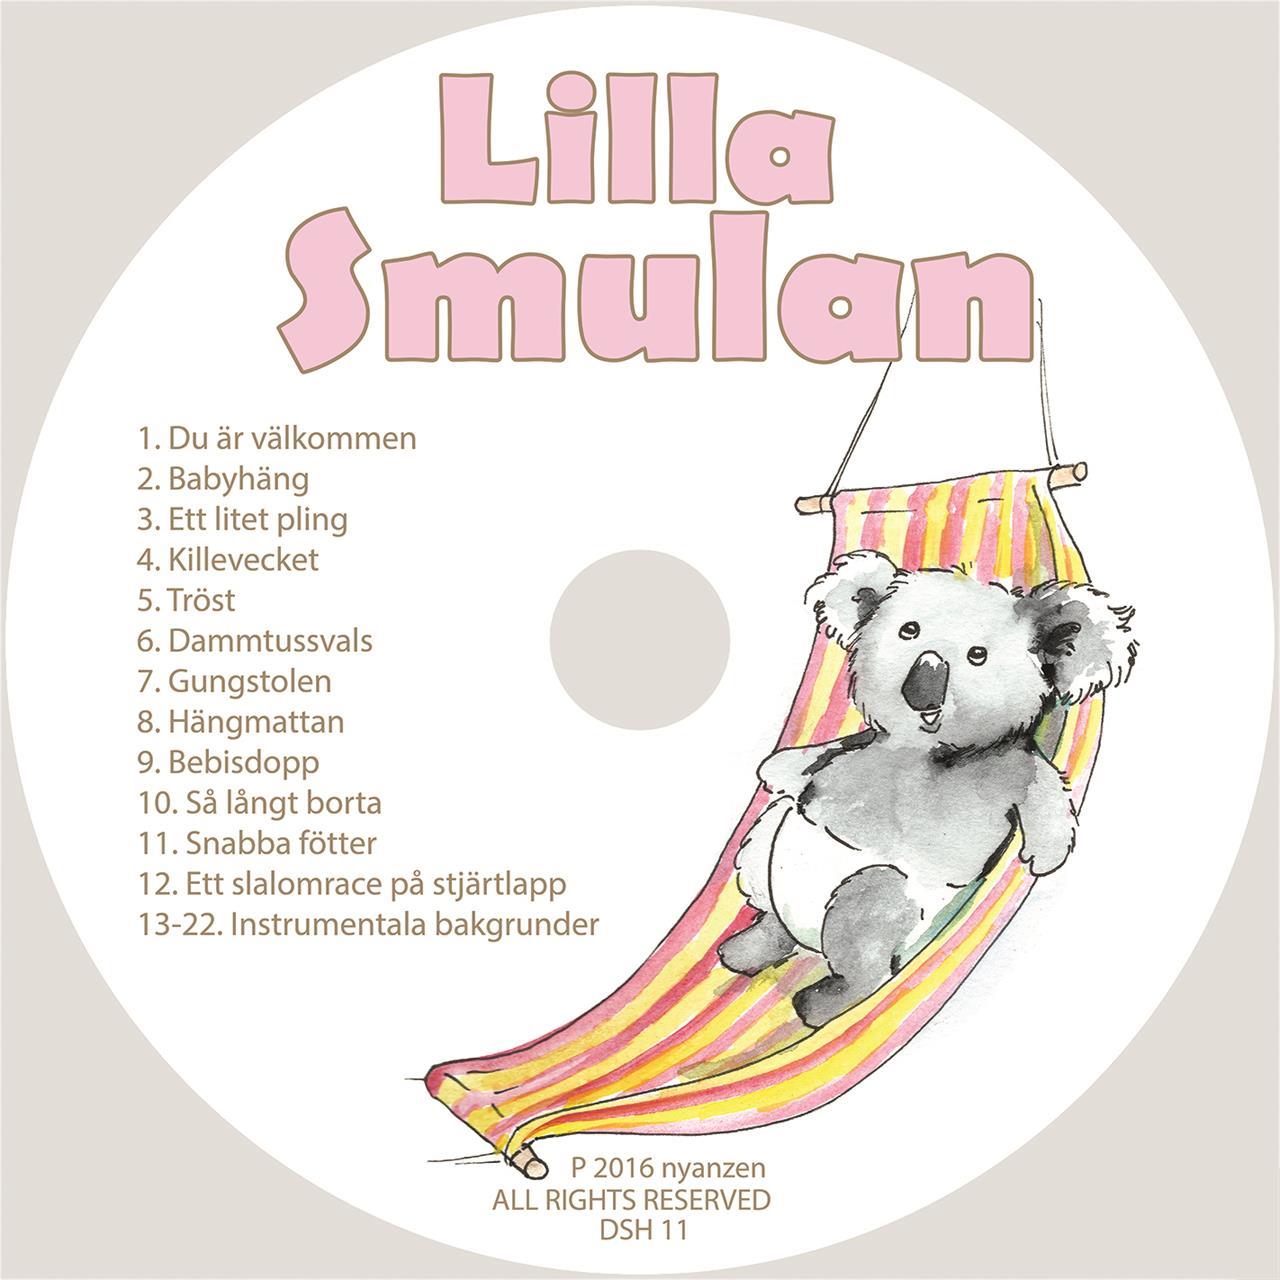 Lilla Smulan - Cd/Digital musik